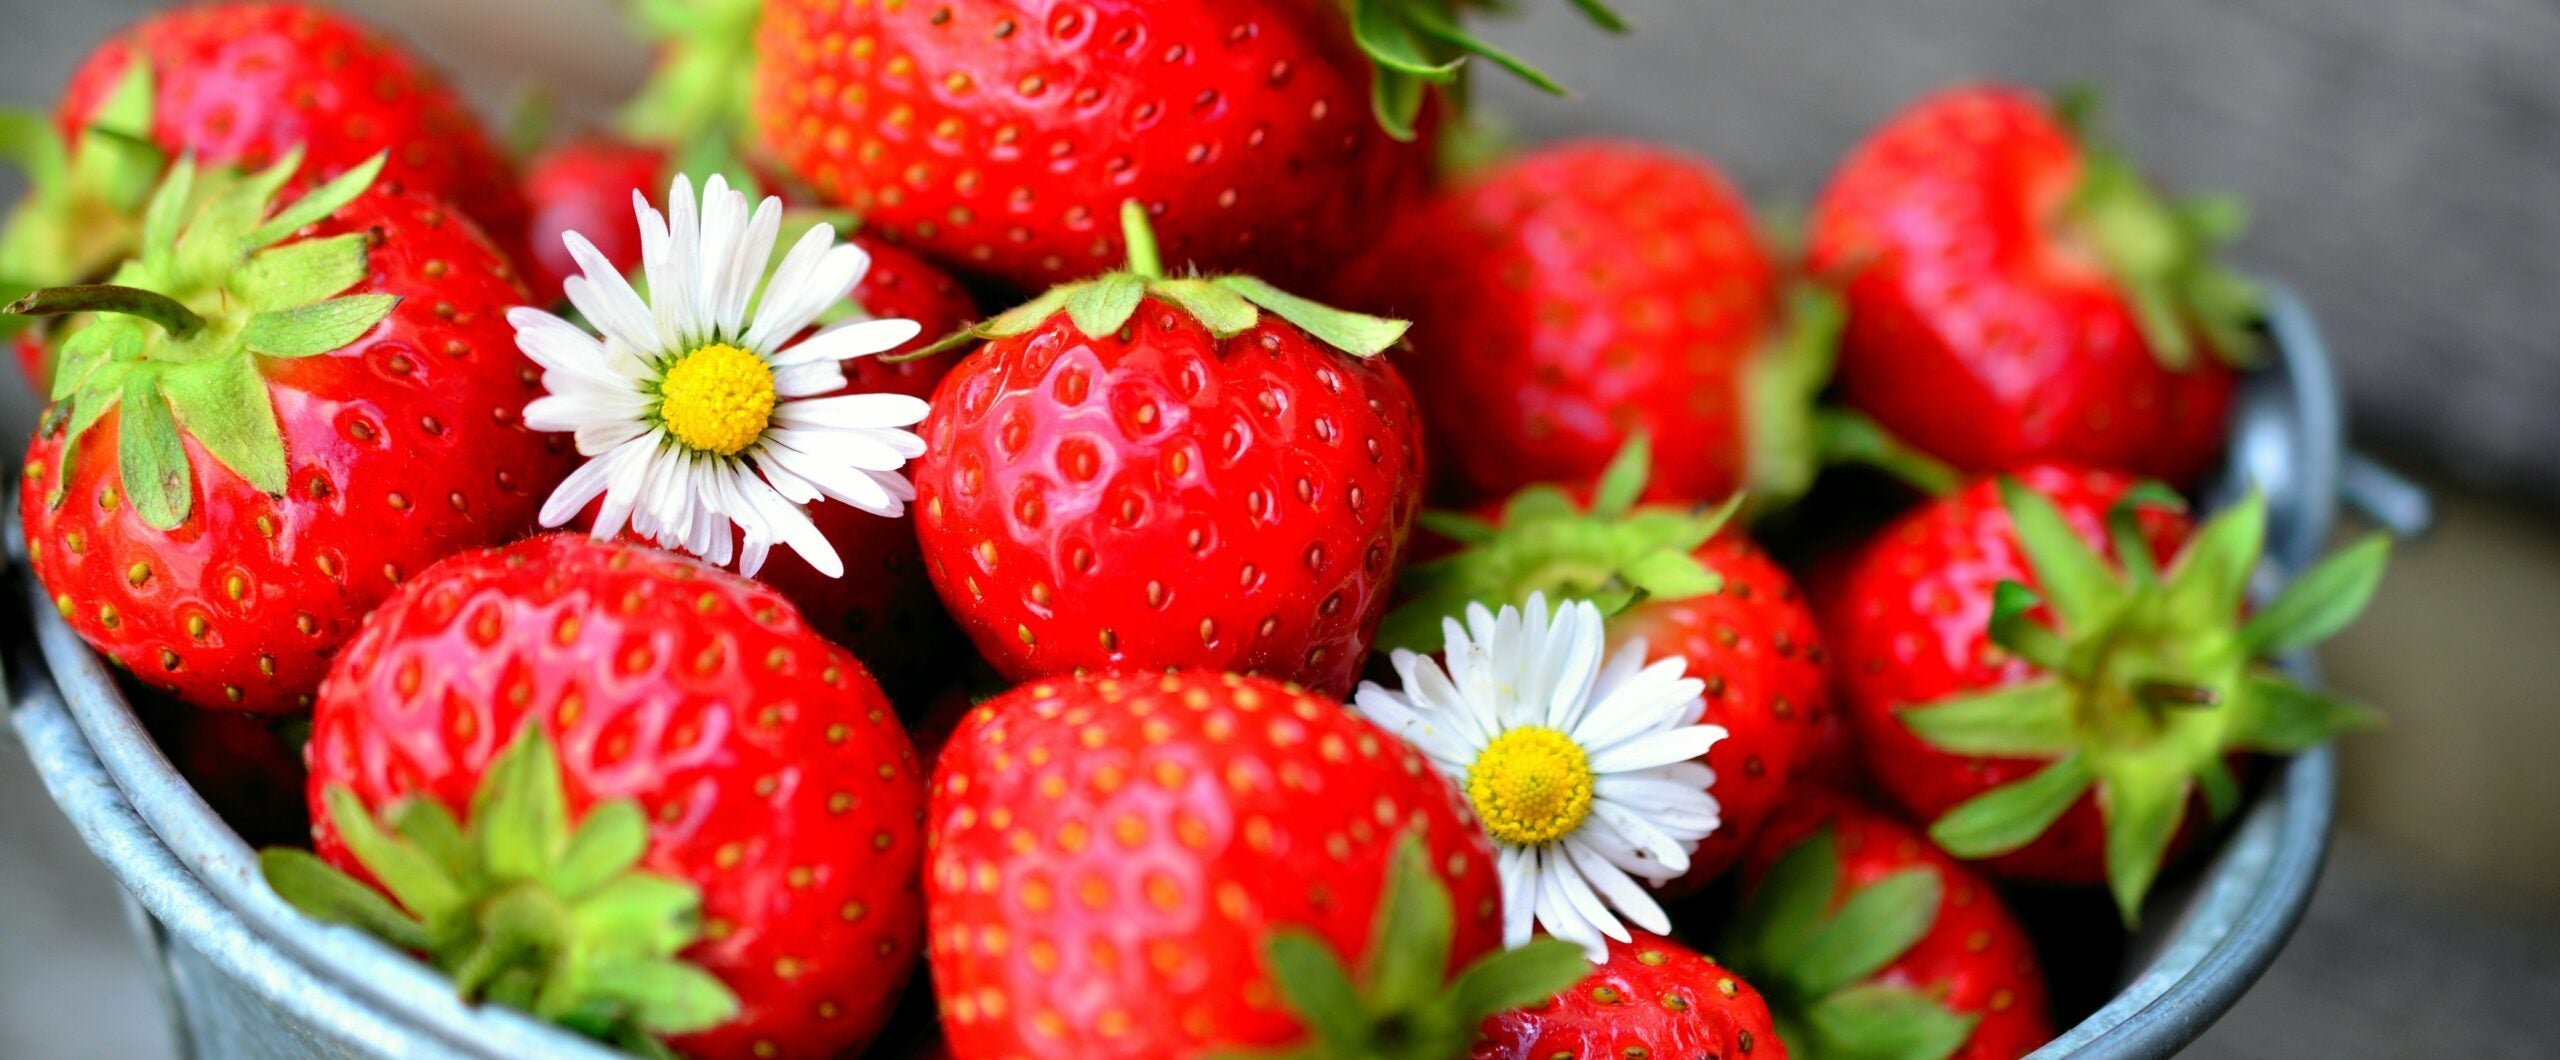 strawberries-3974840_